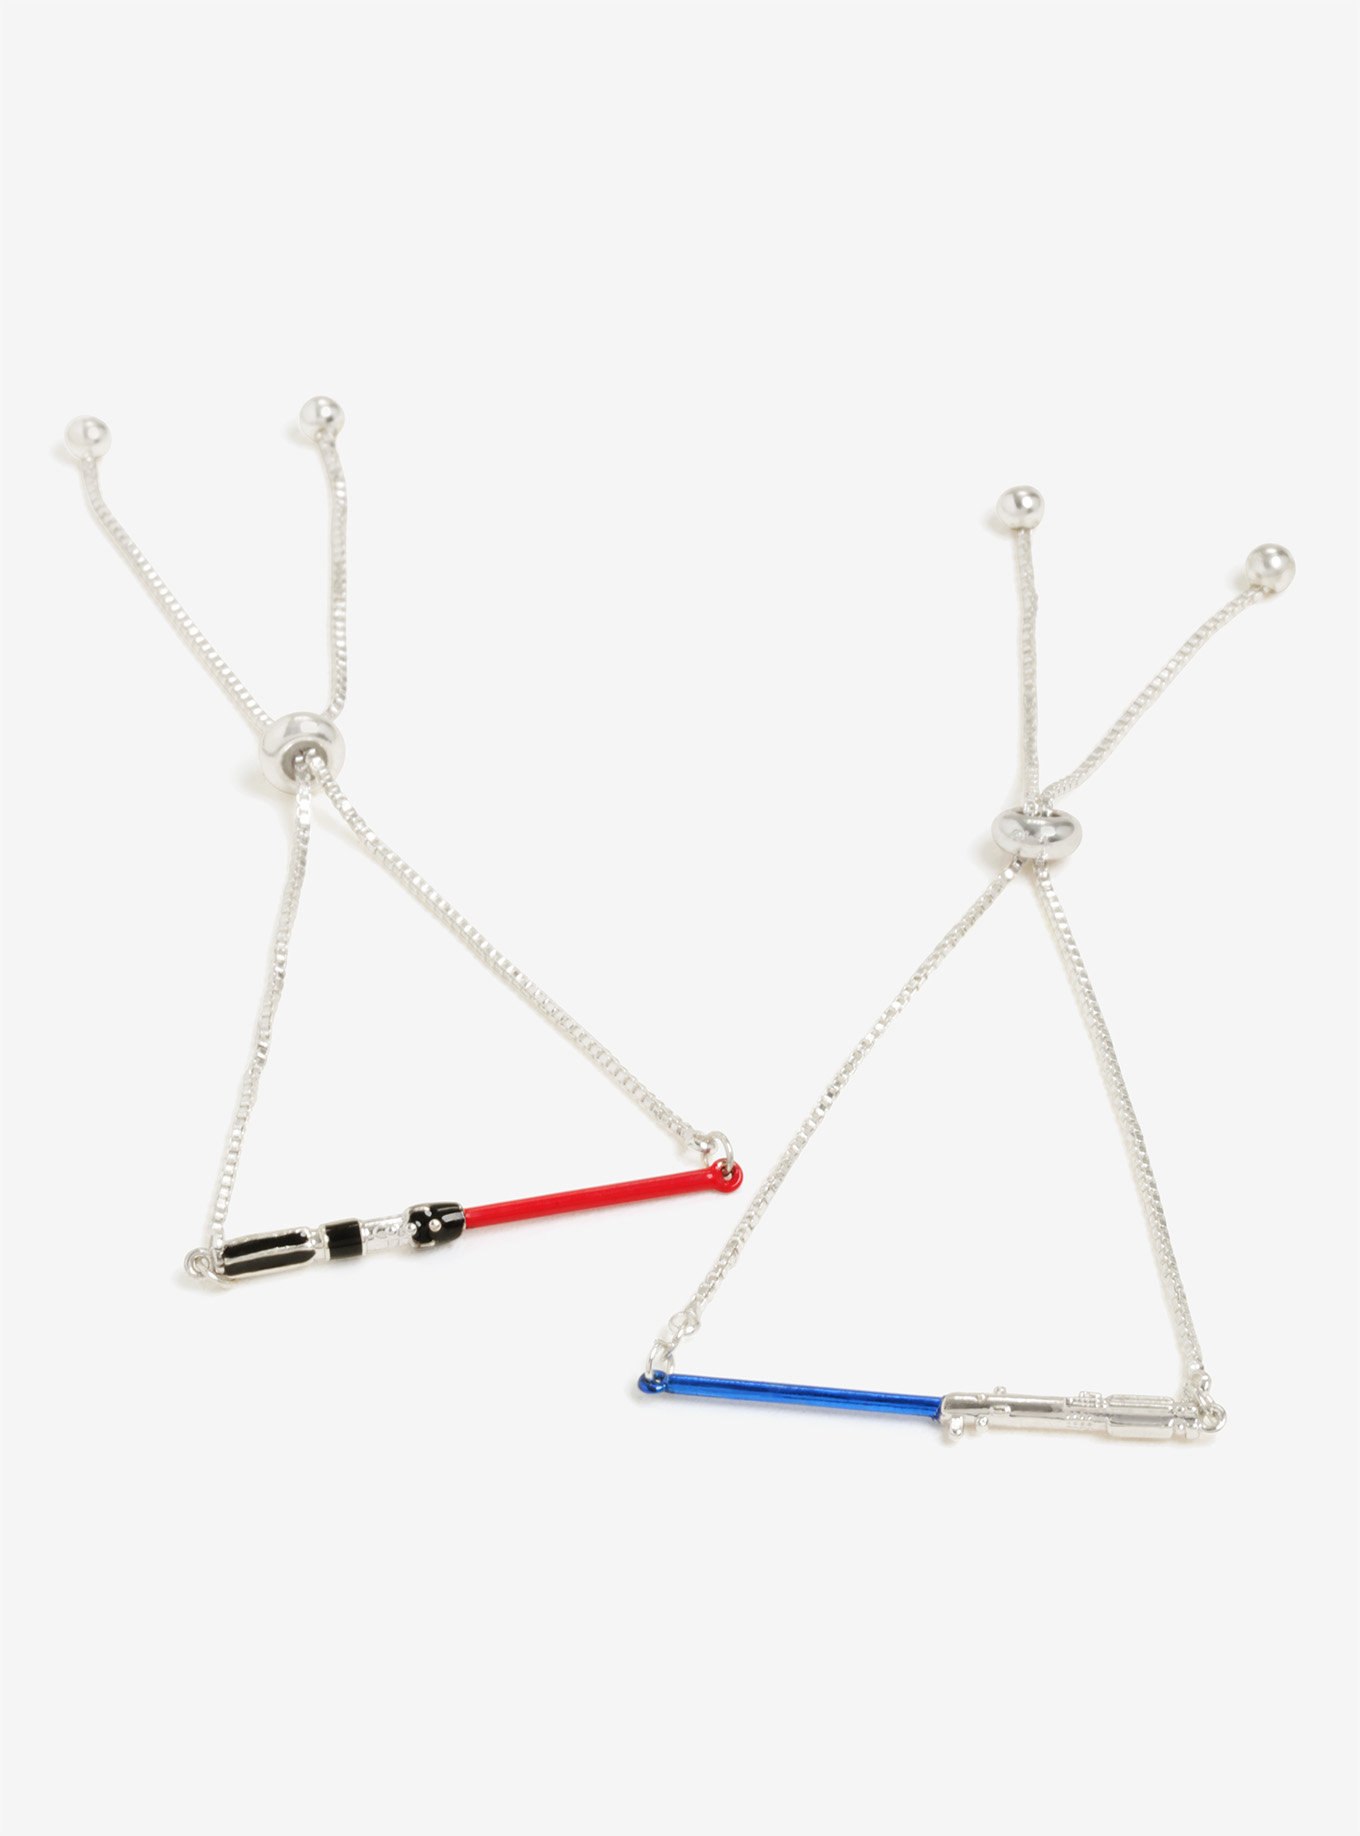 Star Wars Lightsaber Bracelet Set at Box Lunch